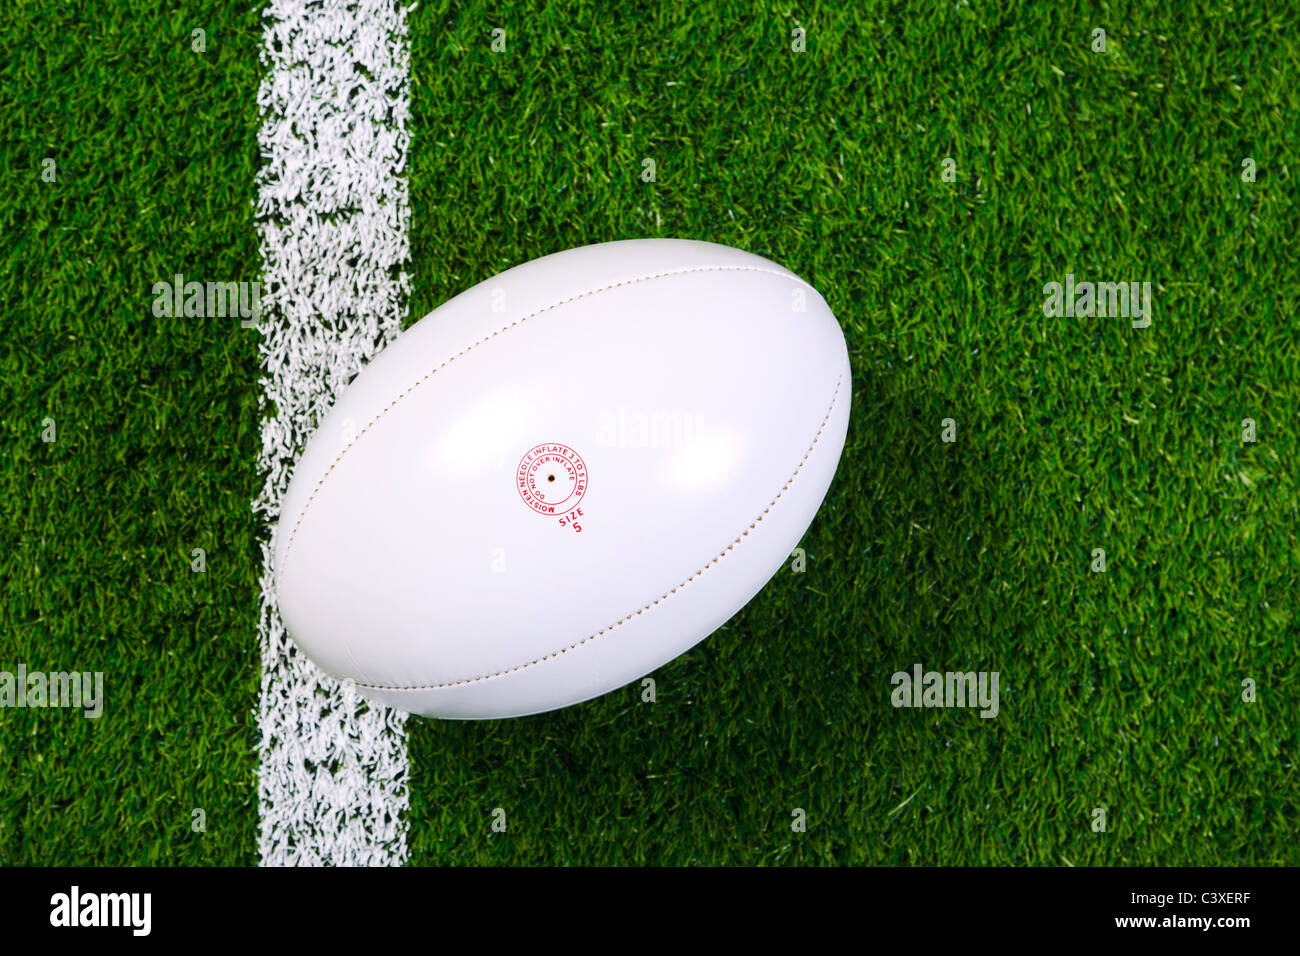 Foto de un balón de rugby sobre un césped junto a la línea blanca, tomada desde arriba. Foto de stock